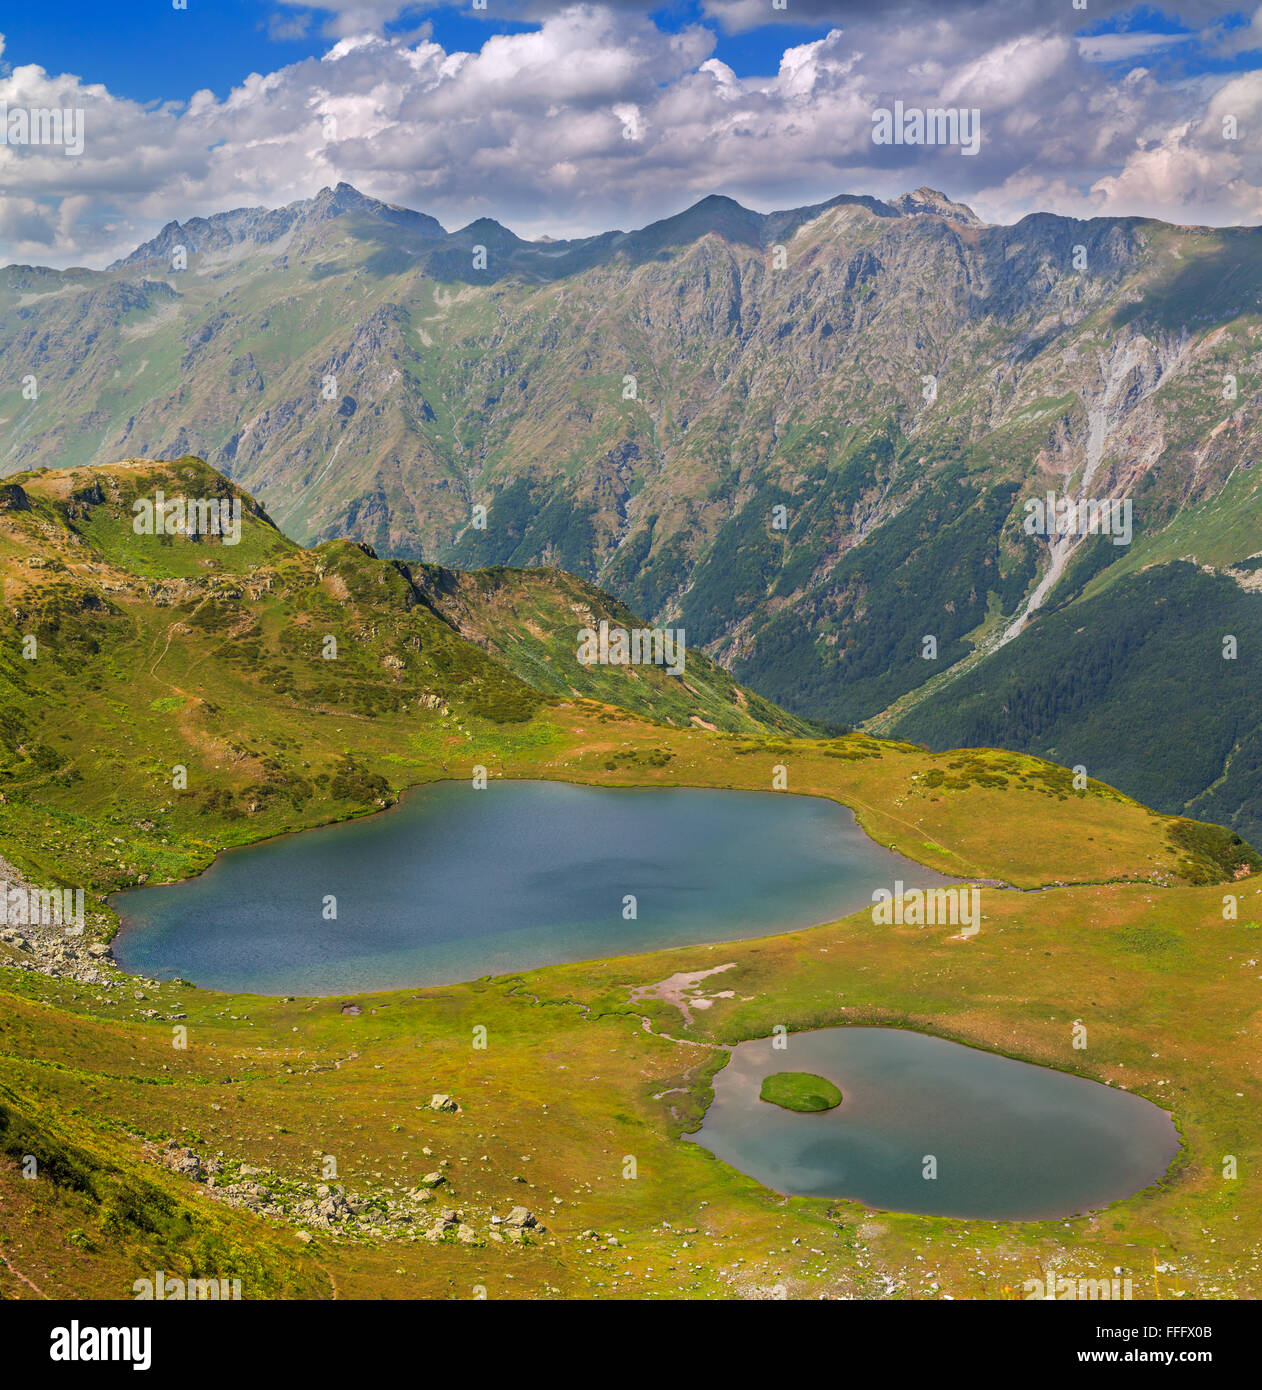 Valley of seven lakes, Caucasus mountains, Abkhazia, Georgia Stock Photo